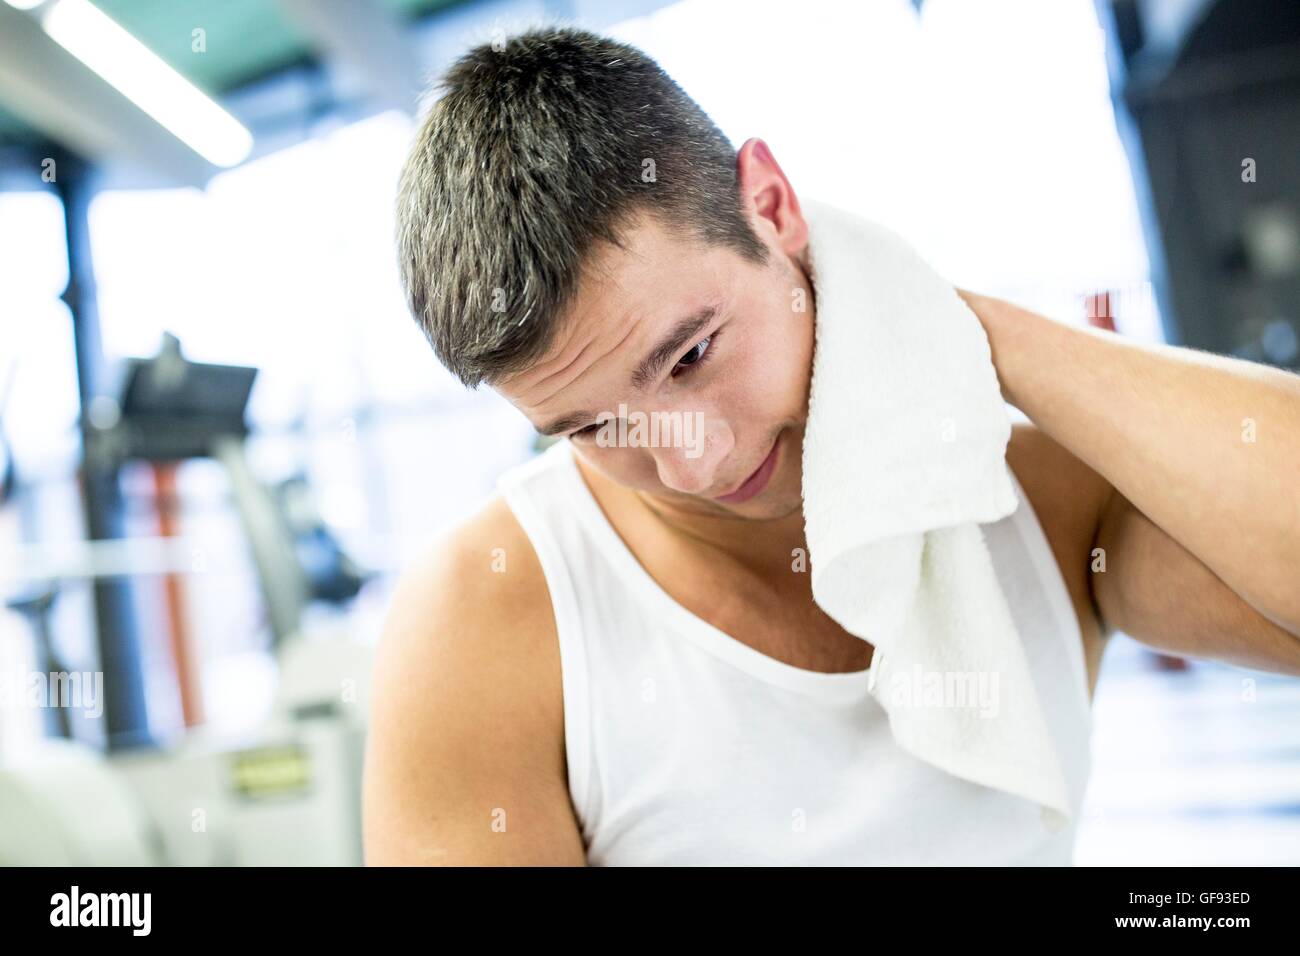 EIGENTUM FREIGEGEBEN. -MODELL VERÖFFENTLICHT. Junger Mann wischte sich sein Schweiß mit Handtuch nach dem Training im Fitness-Studio. Stockfoto